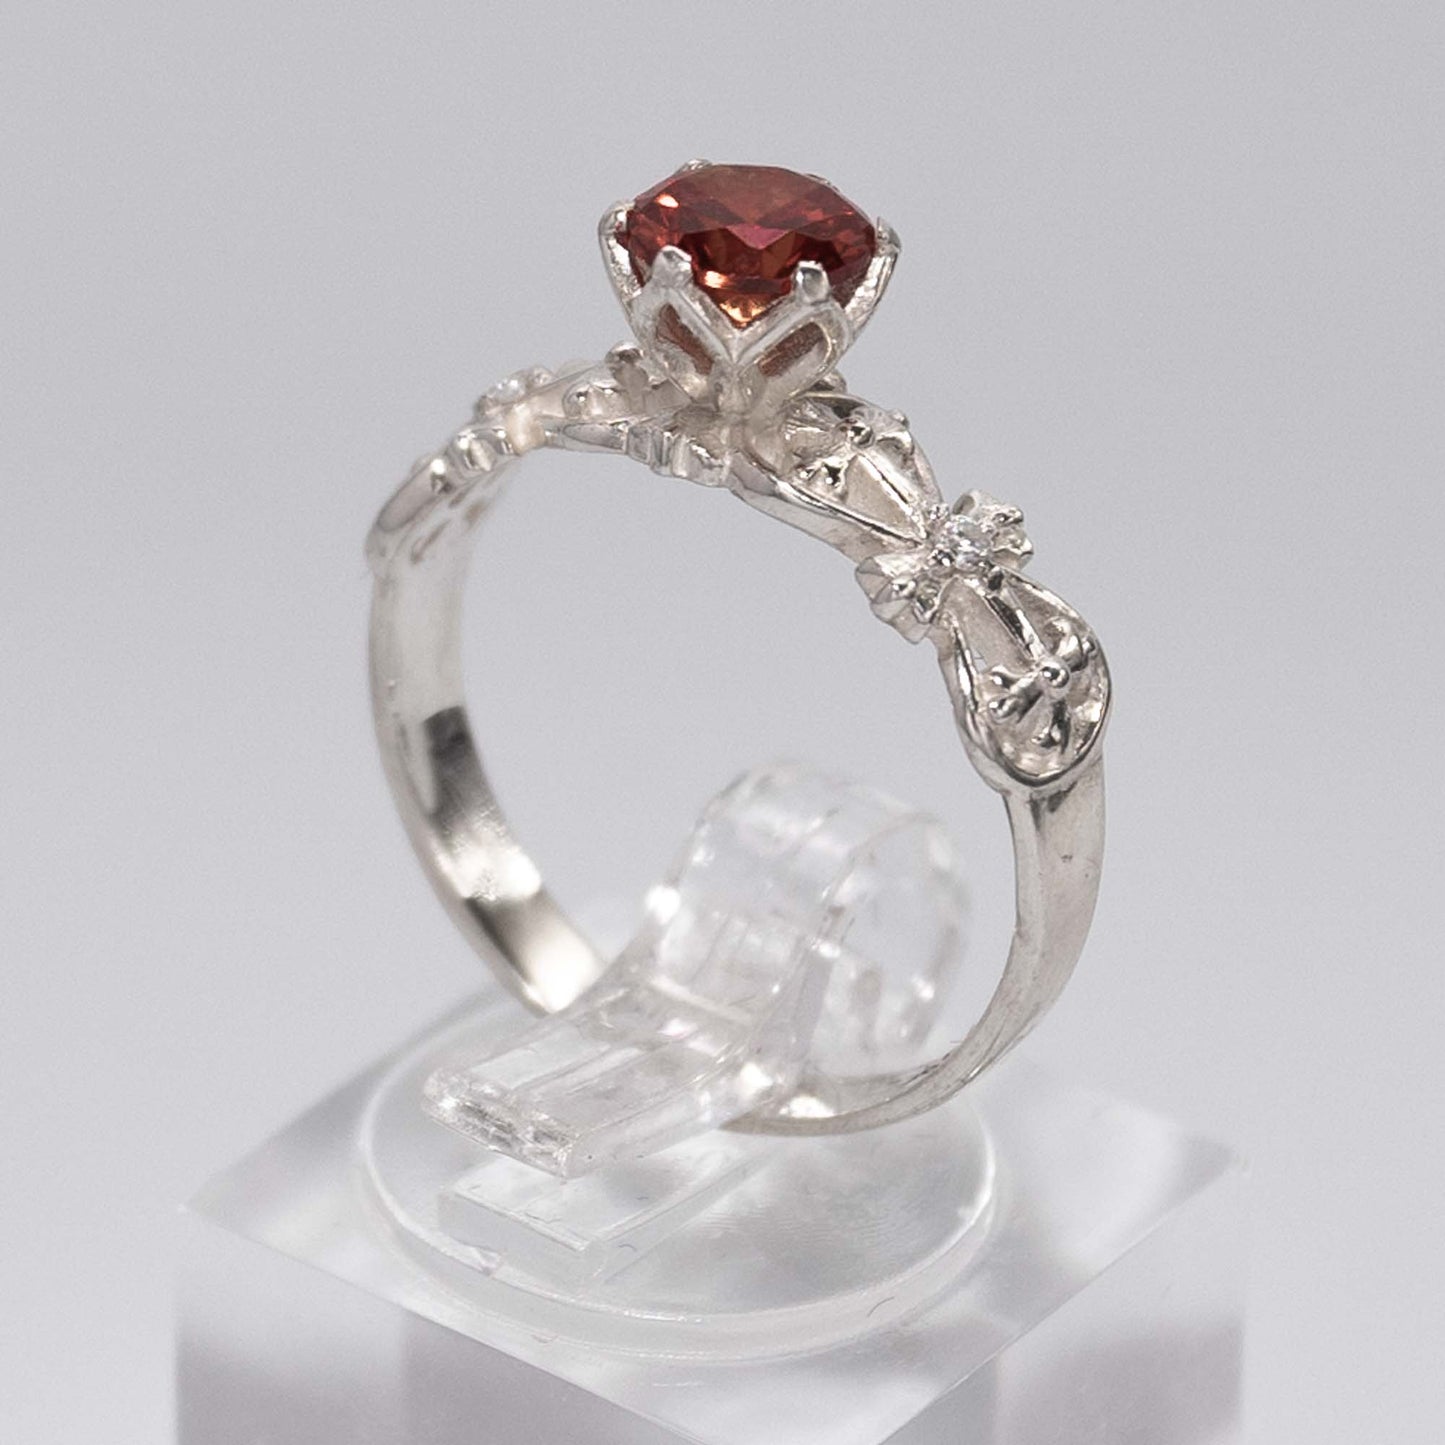 Red Velvet- 925 Silver ring